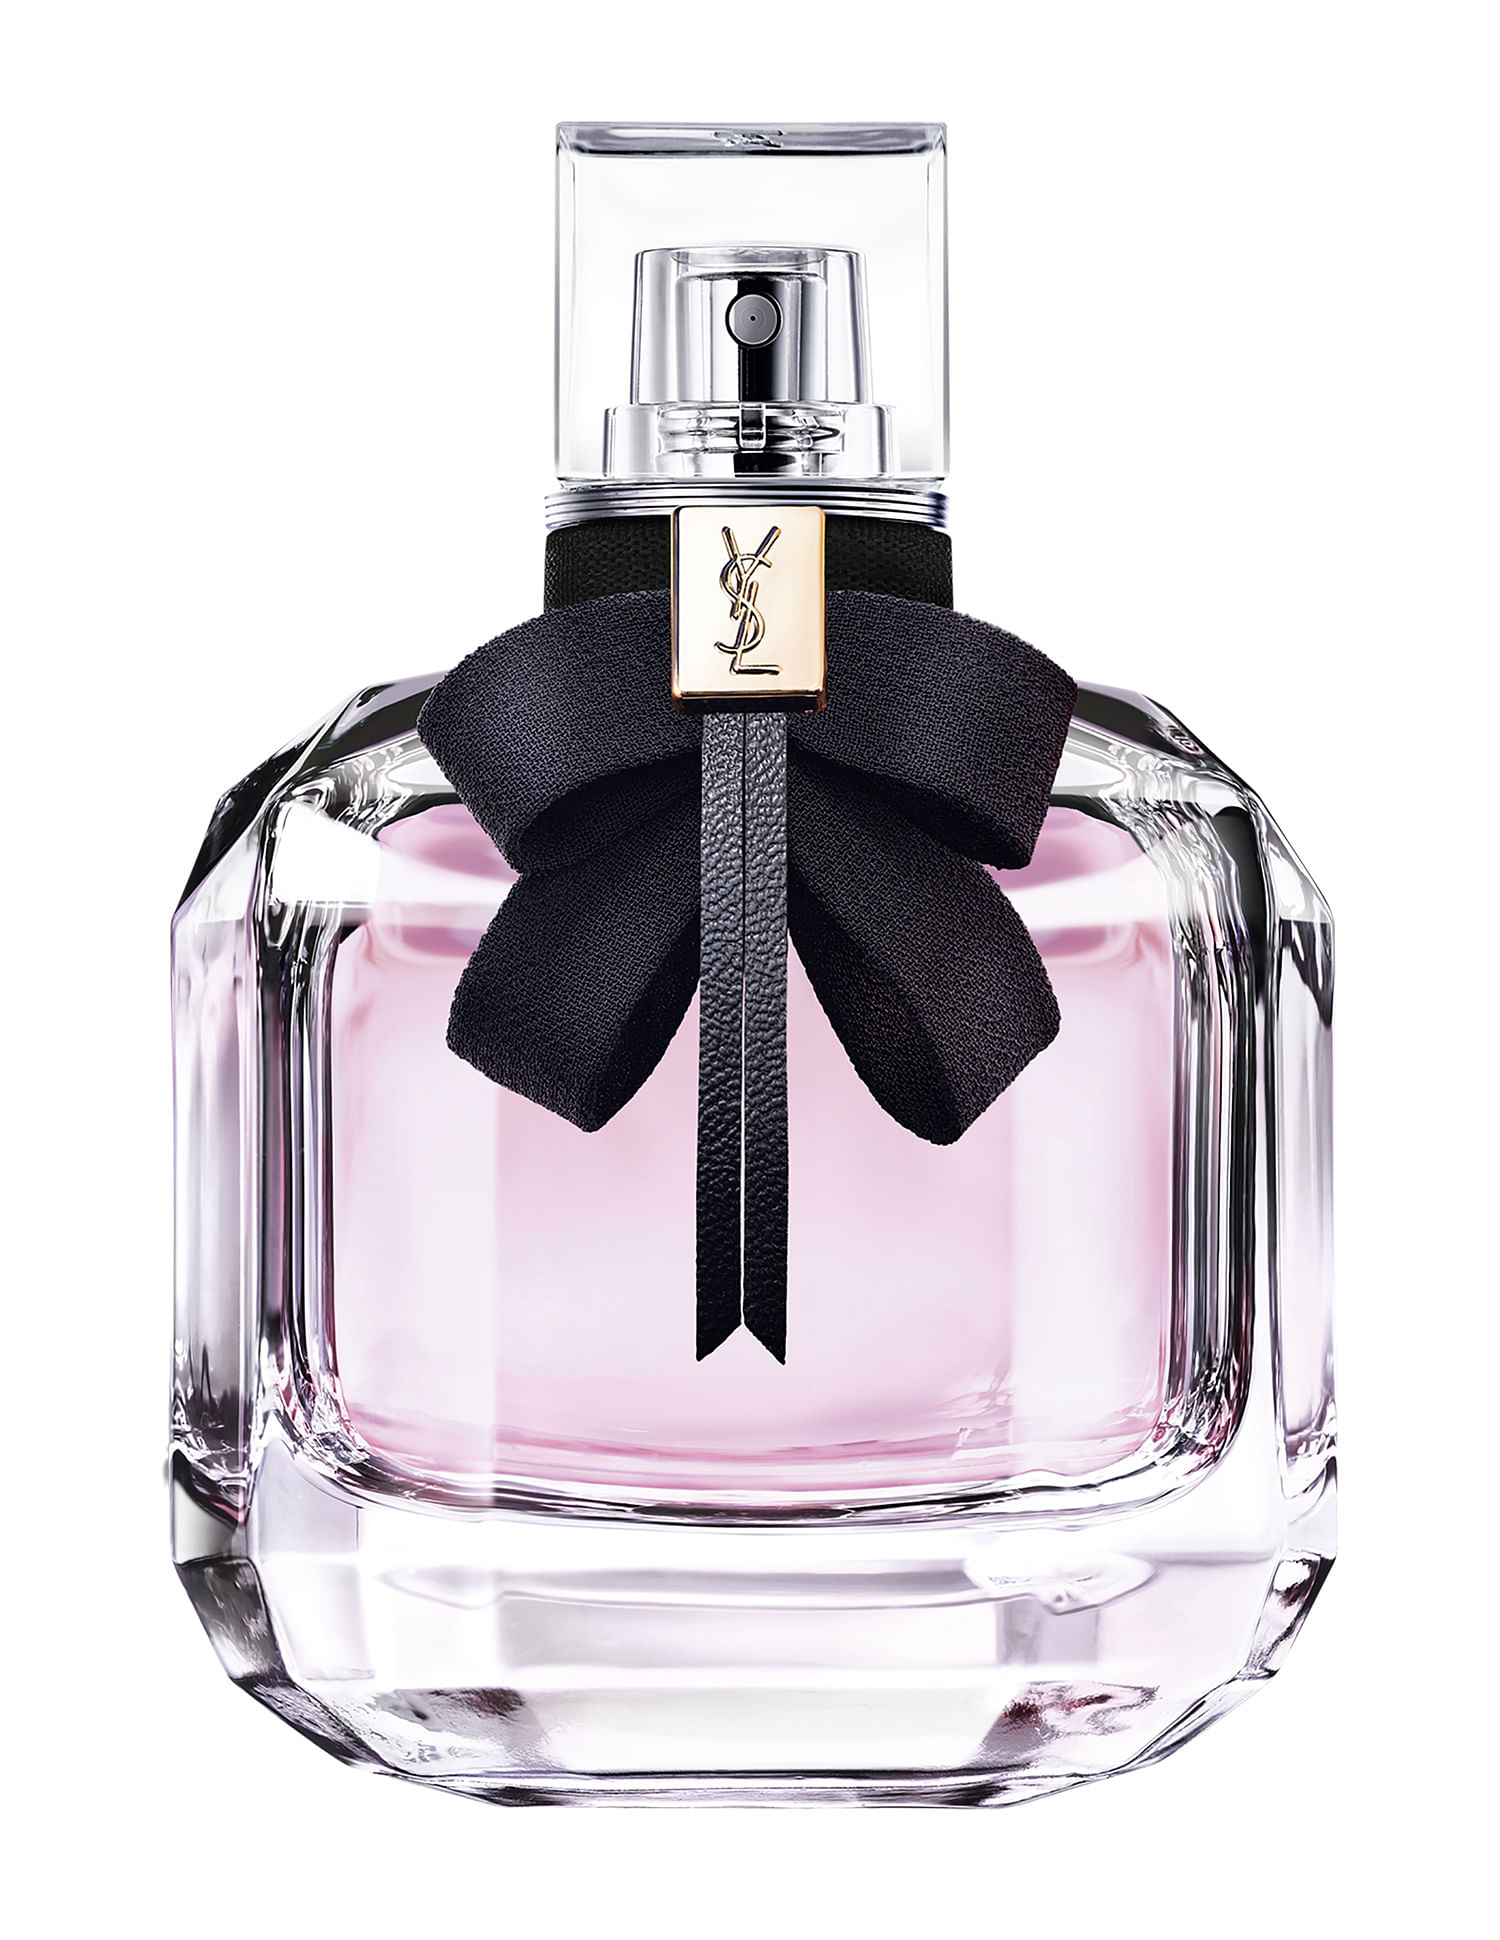 Shop Yves Saint Laurent Mon Paris Eau de Parfum